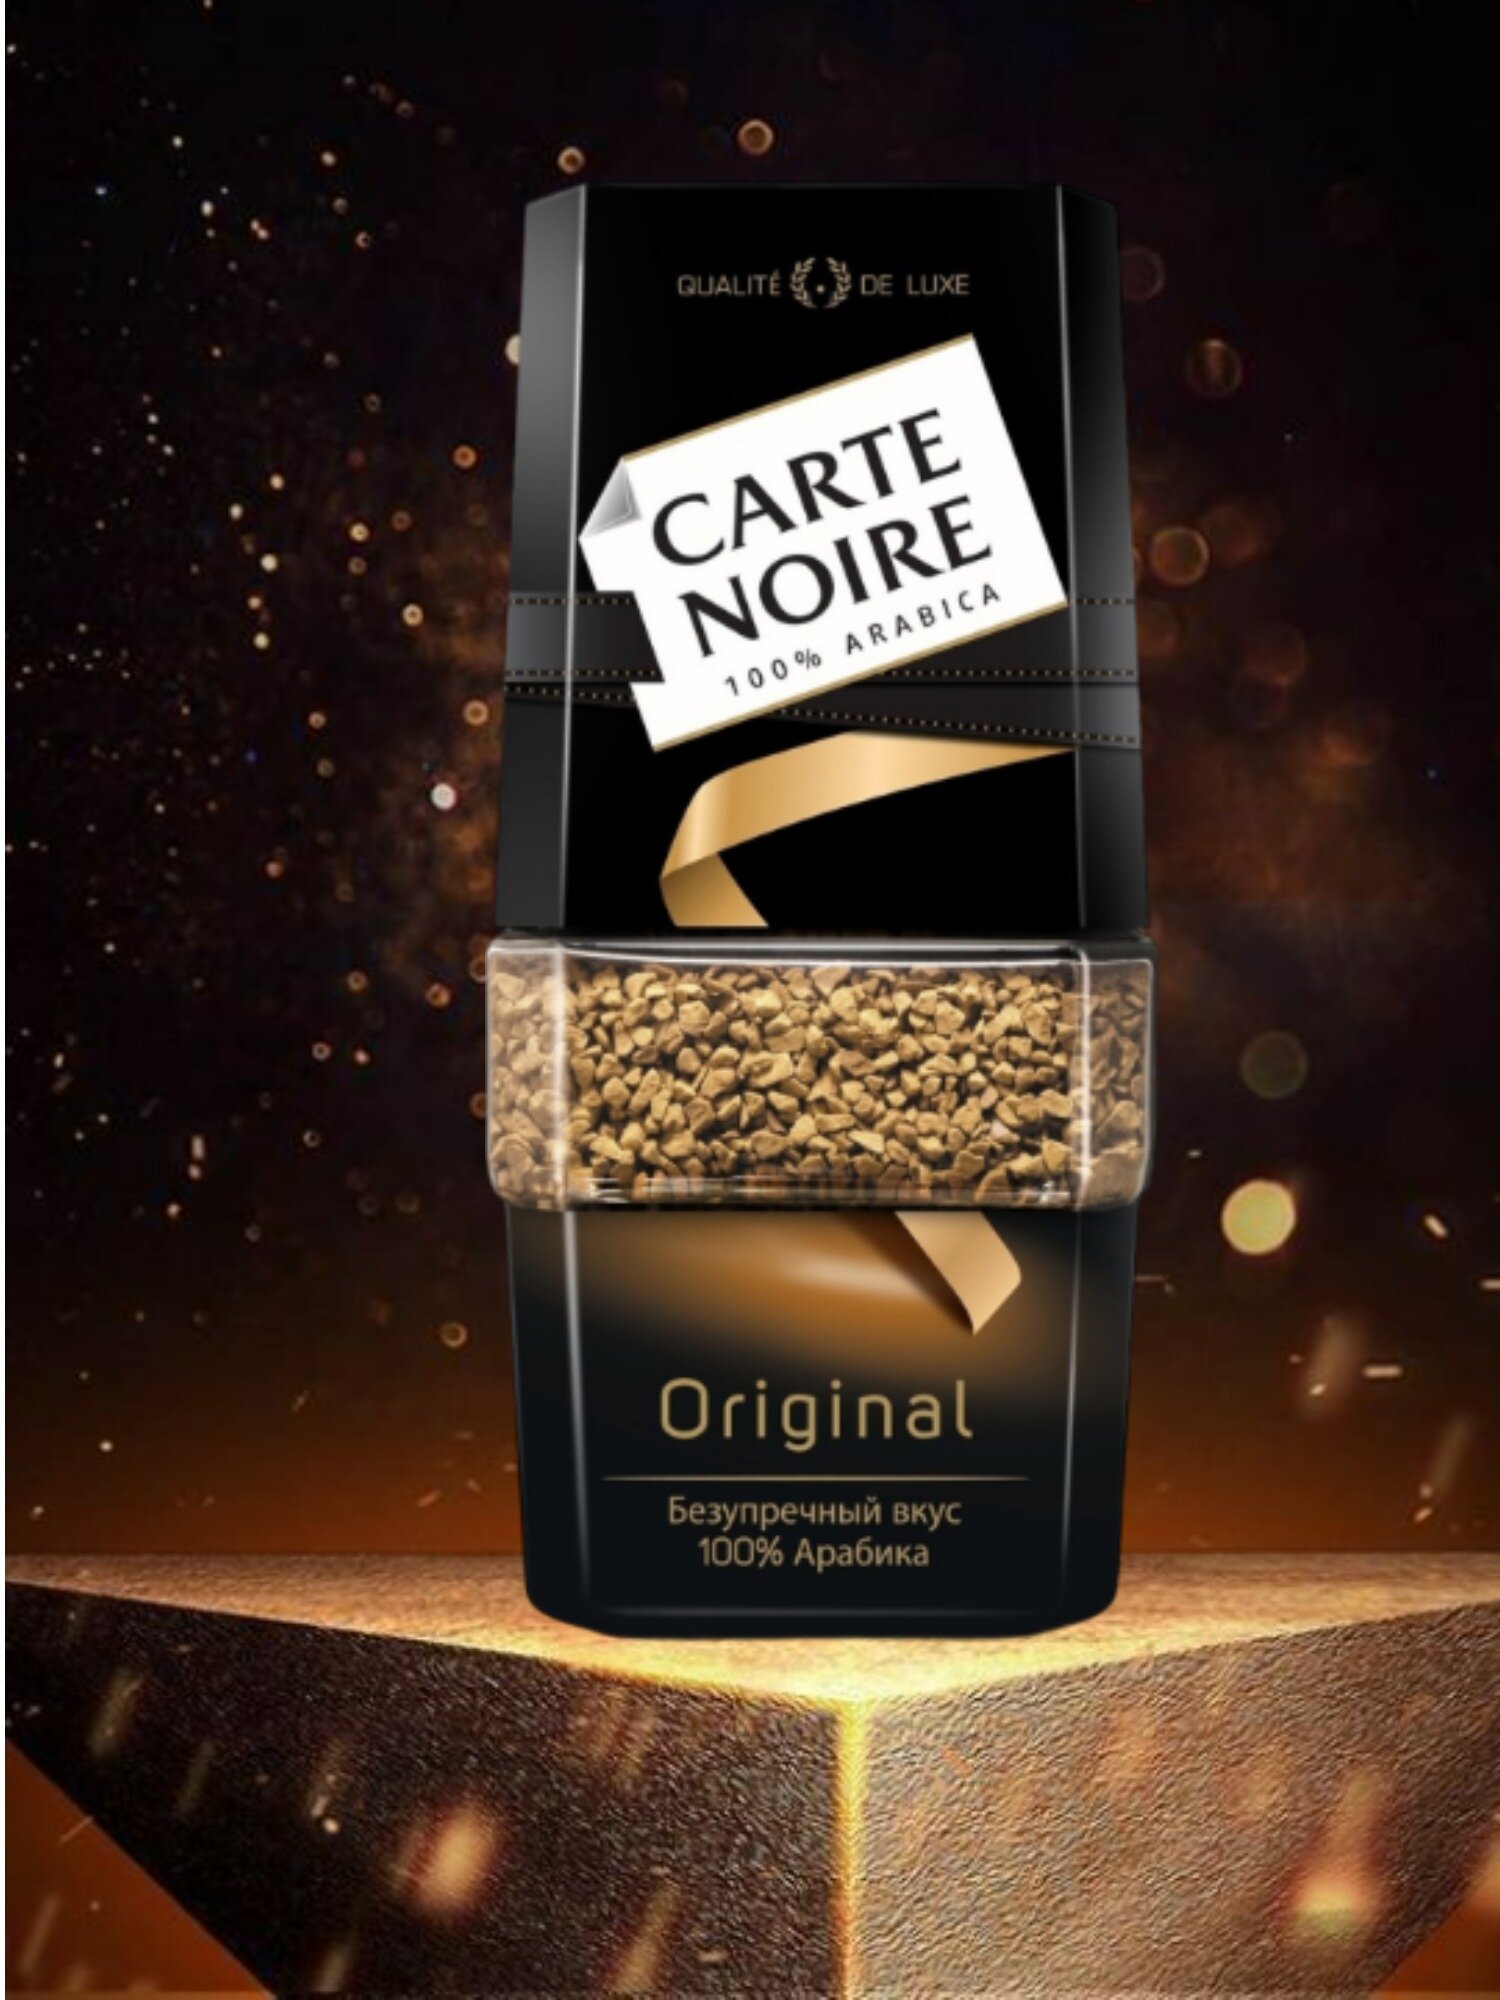 Кофе растворимый Carte Noire Original, стеклянная банка, 95 г